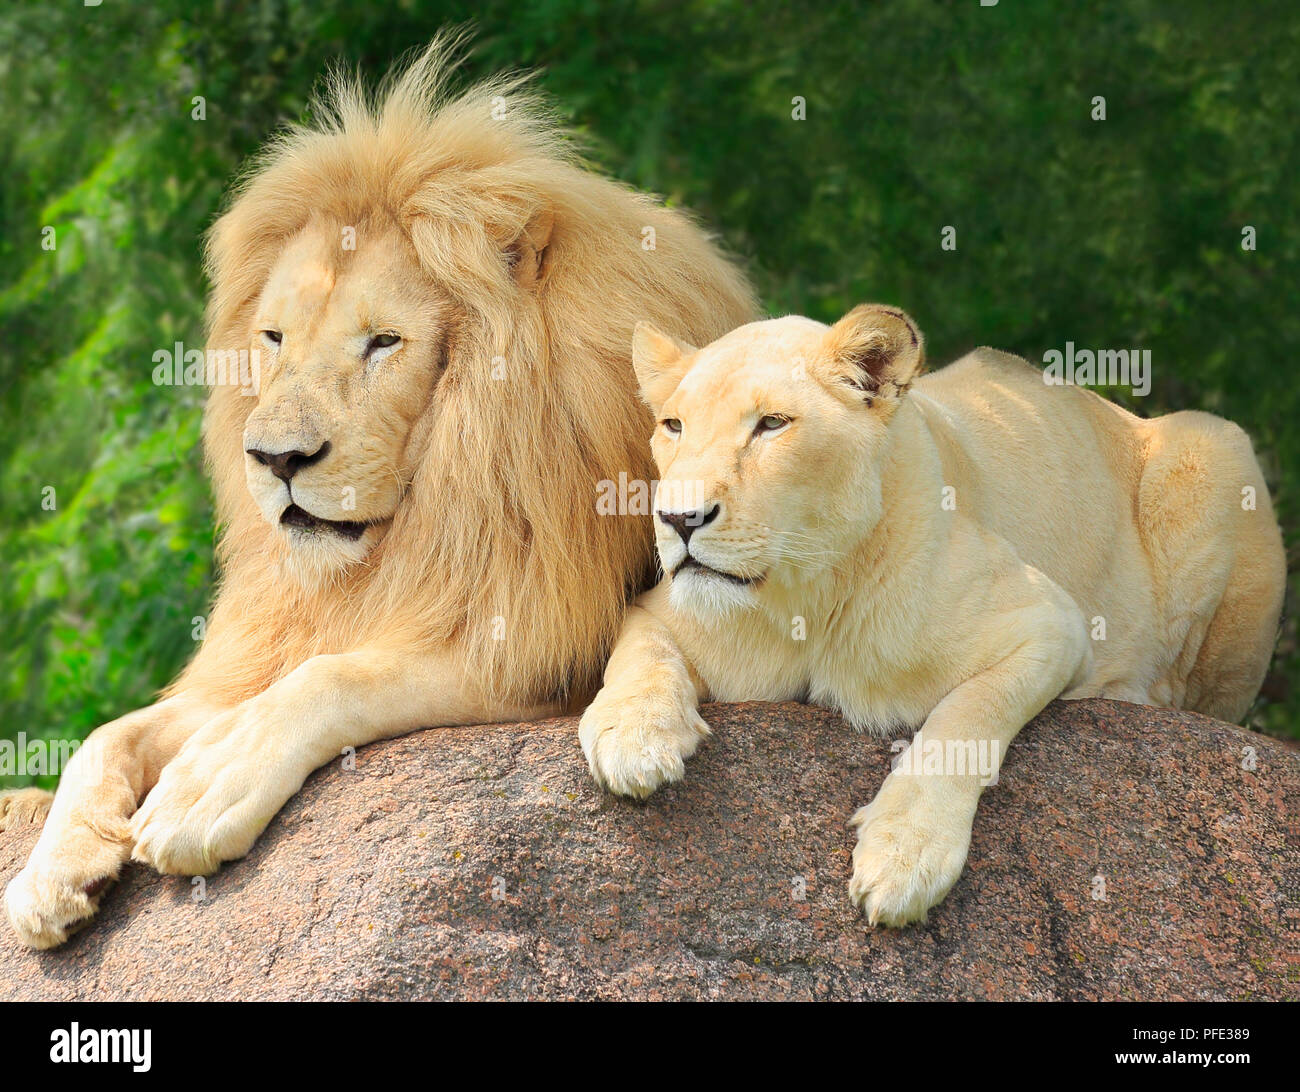 Lions Family Portrait Stock Photo